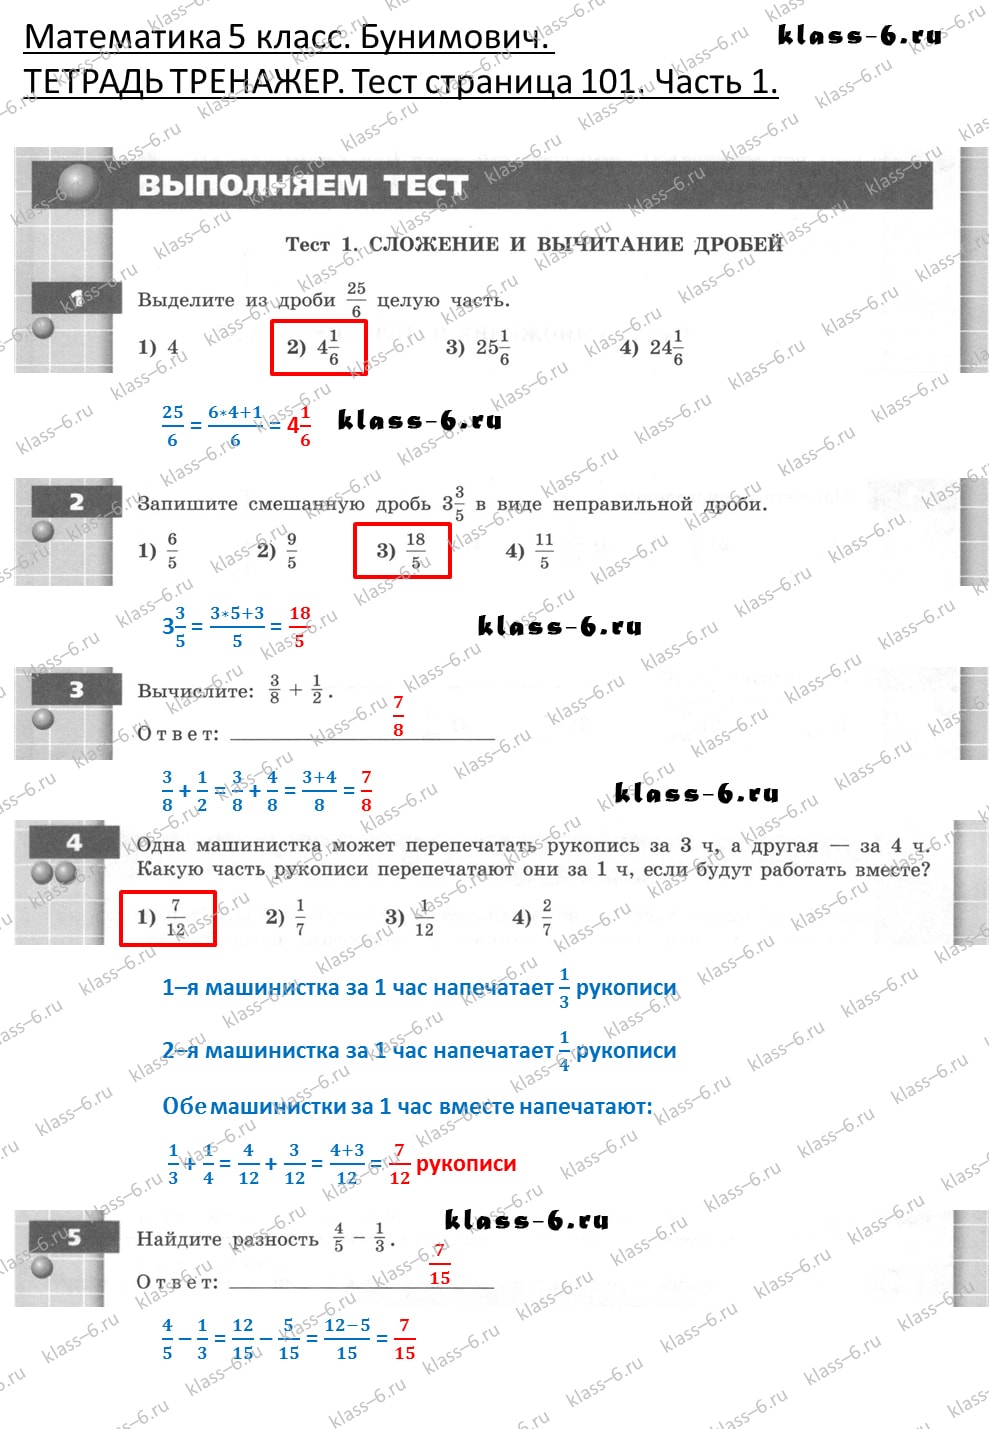 решебник и гдз по математике тетрадь тренажер Бунимович 5 класс тесты страница 101 (1)